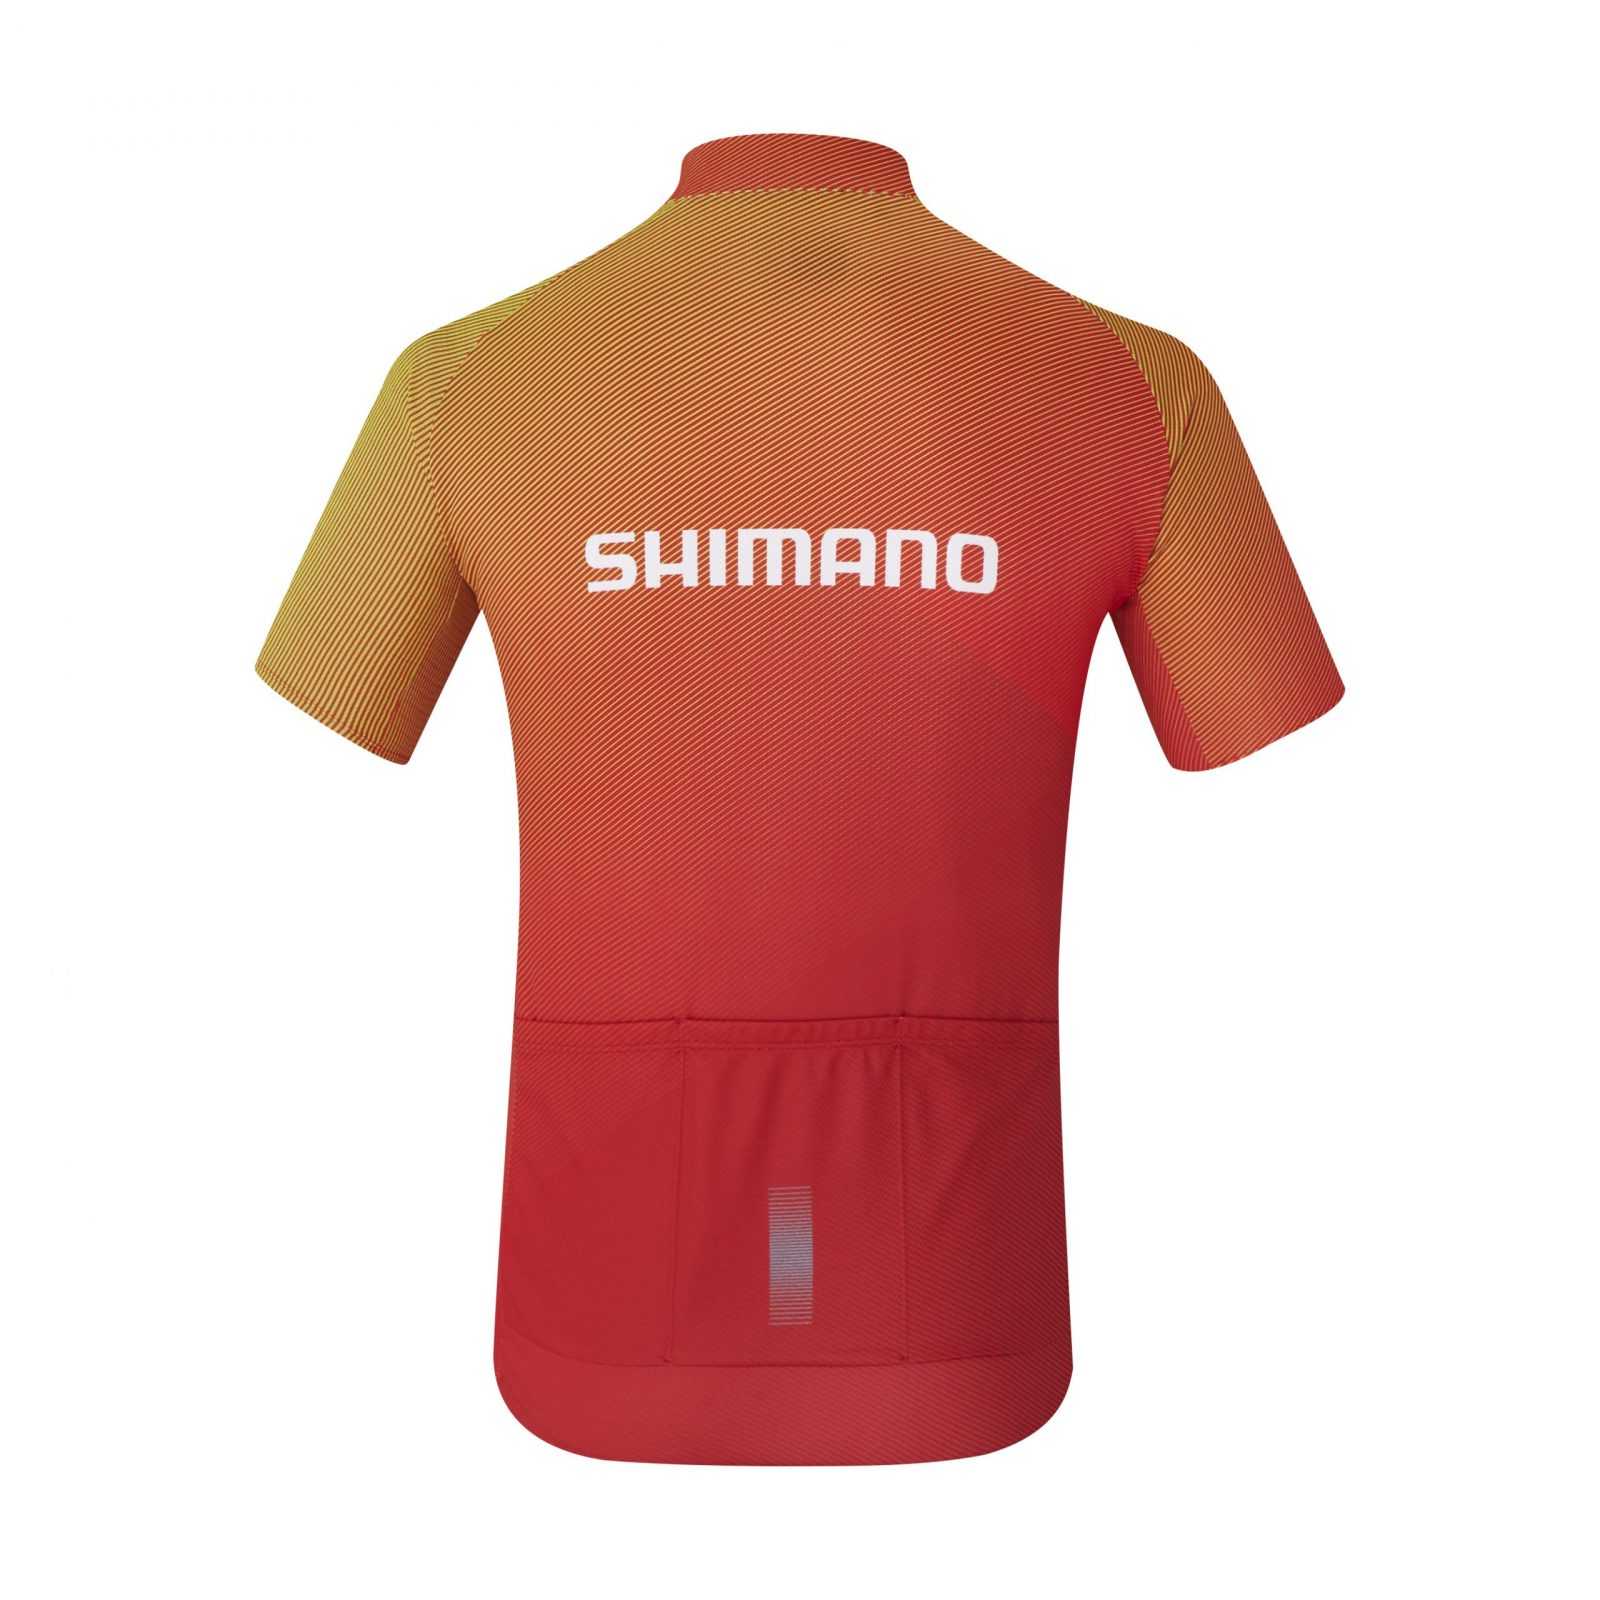 velodzhers-shimano-team2-chervone-rozm-xxxl5caf3a0fe7dc0-original.jpg